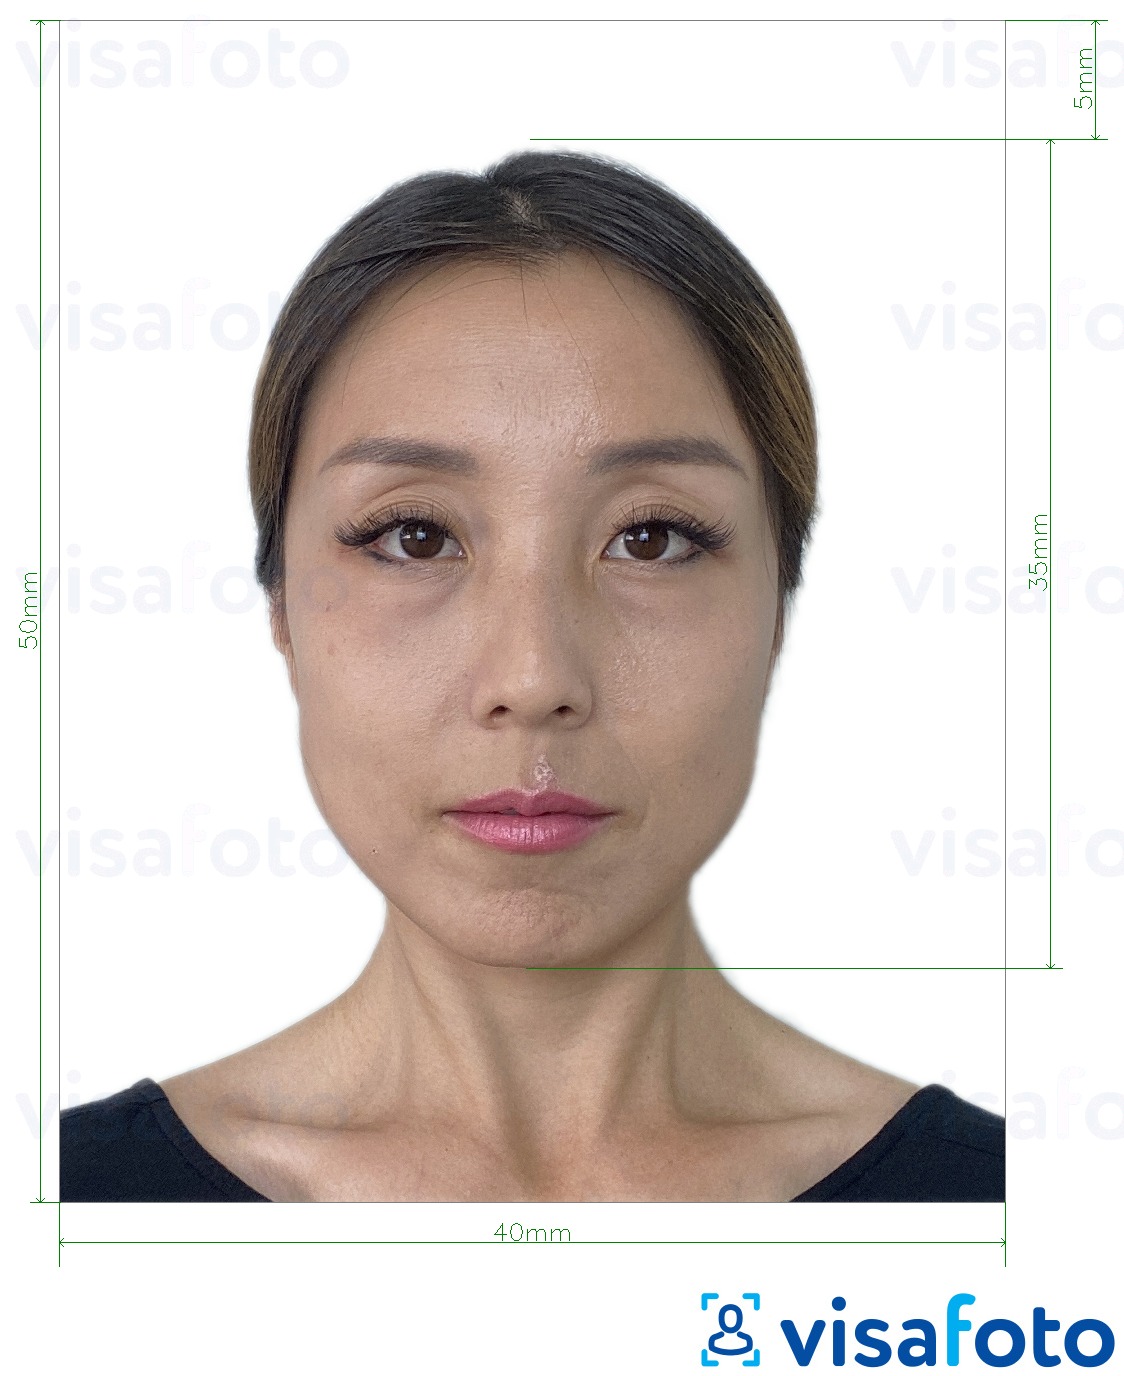 Exemple de foto per a Passaport de Hong Kong 40x50 mm (4x5 cm) amb la mida exacta especificada